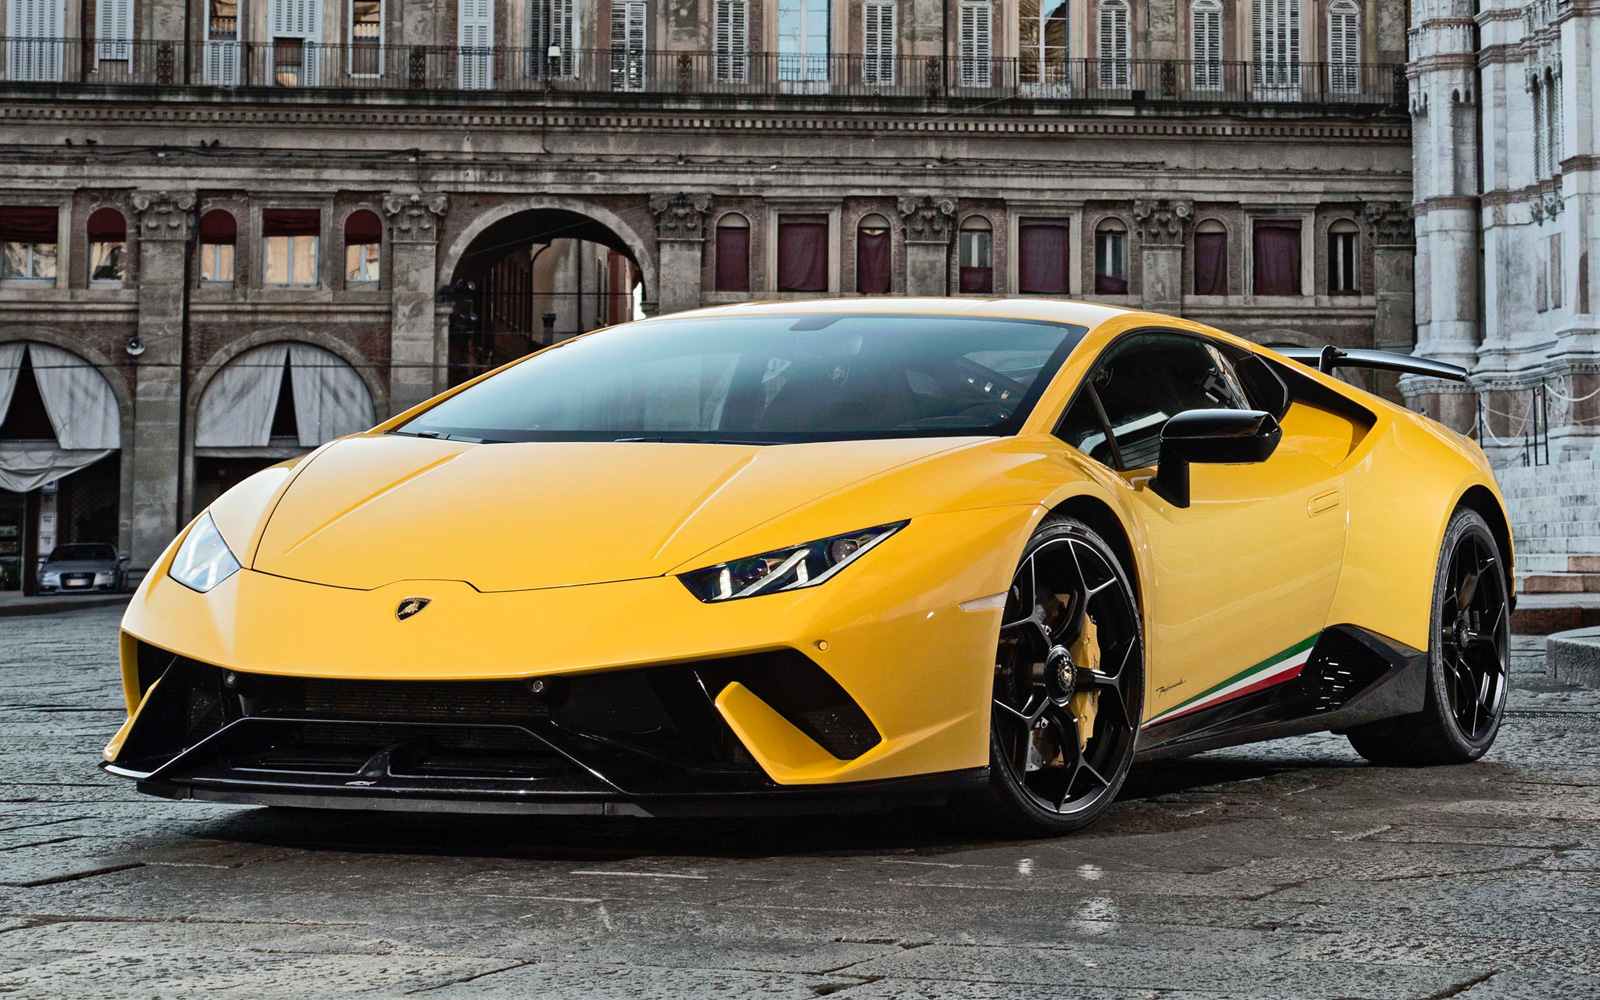 Lamborghini stock